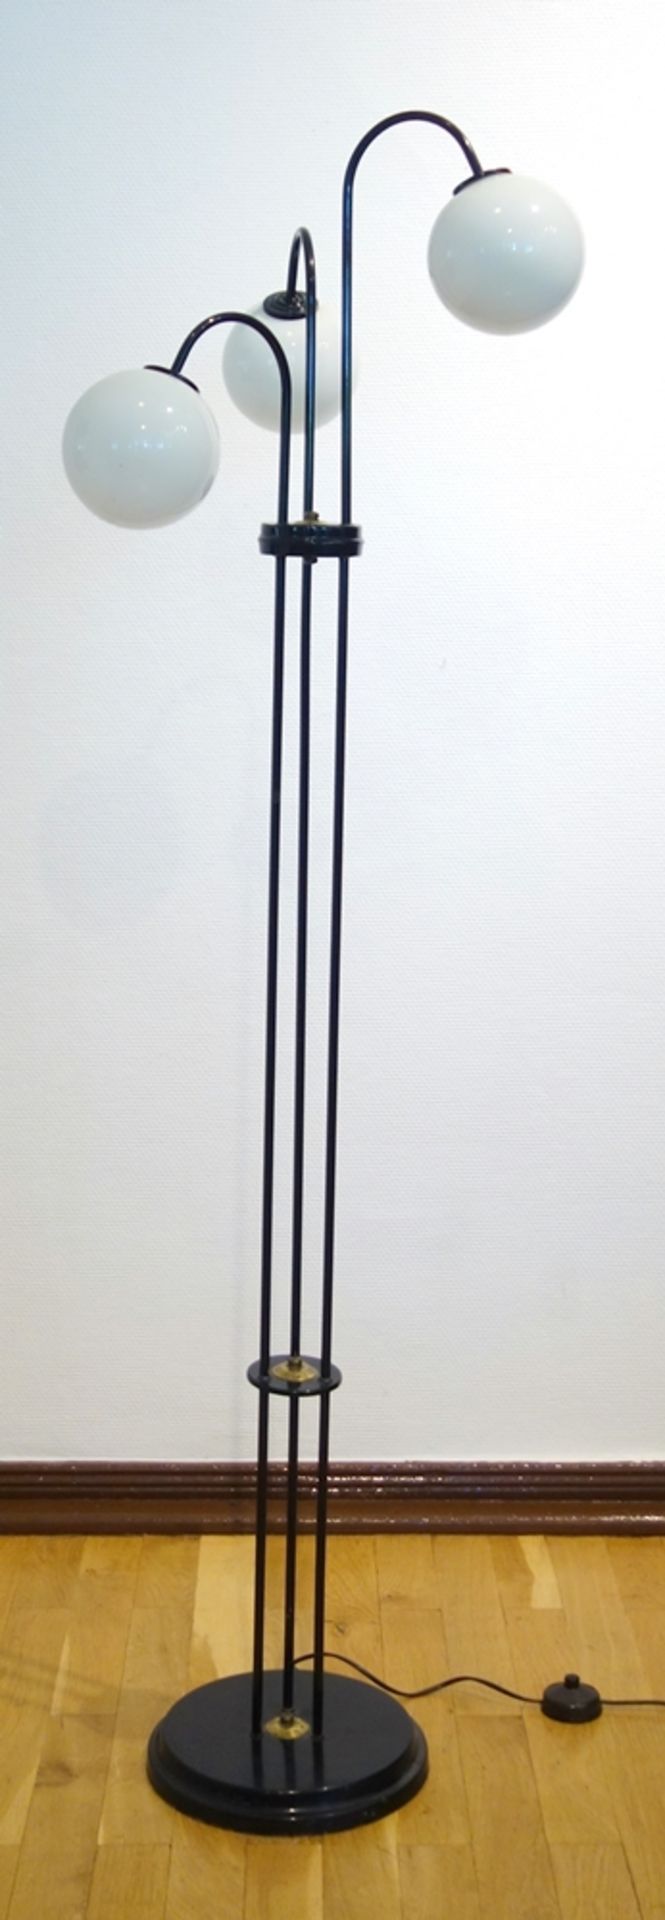 Stehlampe mit Kugelschirmen, 1950er/1960er Jahre, schwarz lackiert, mit drei Milchglaskugeln,